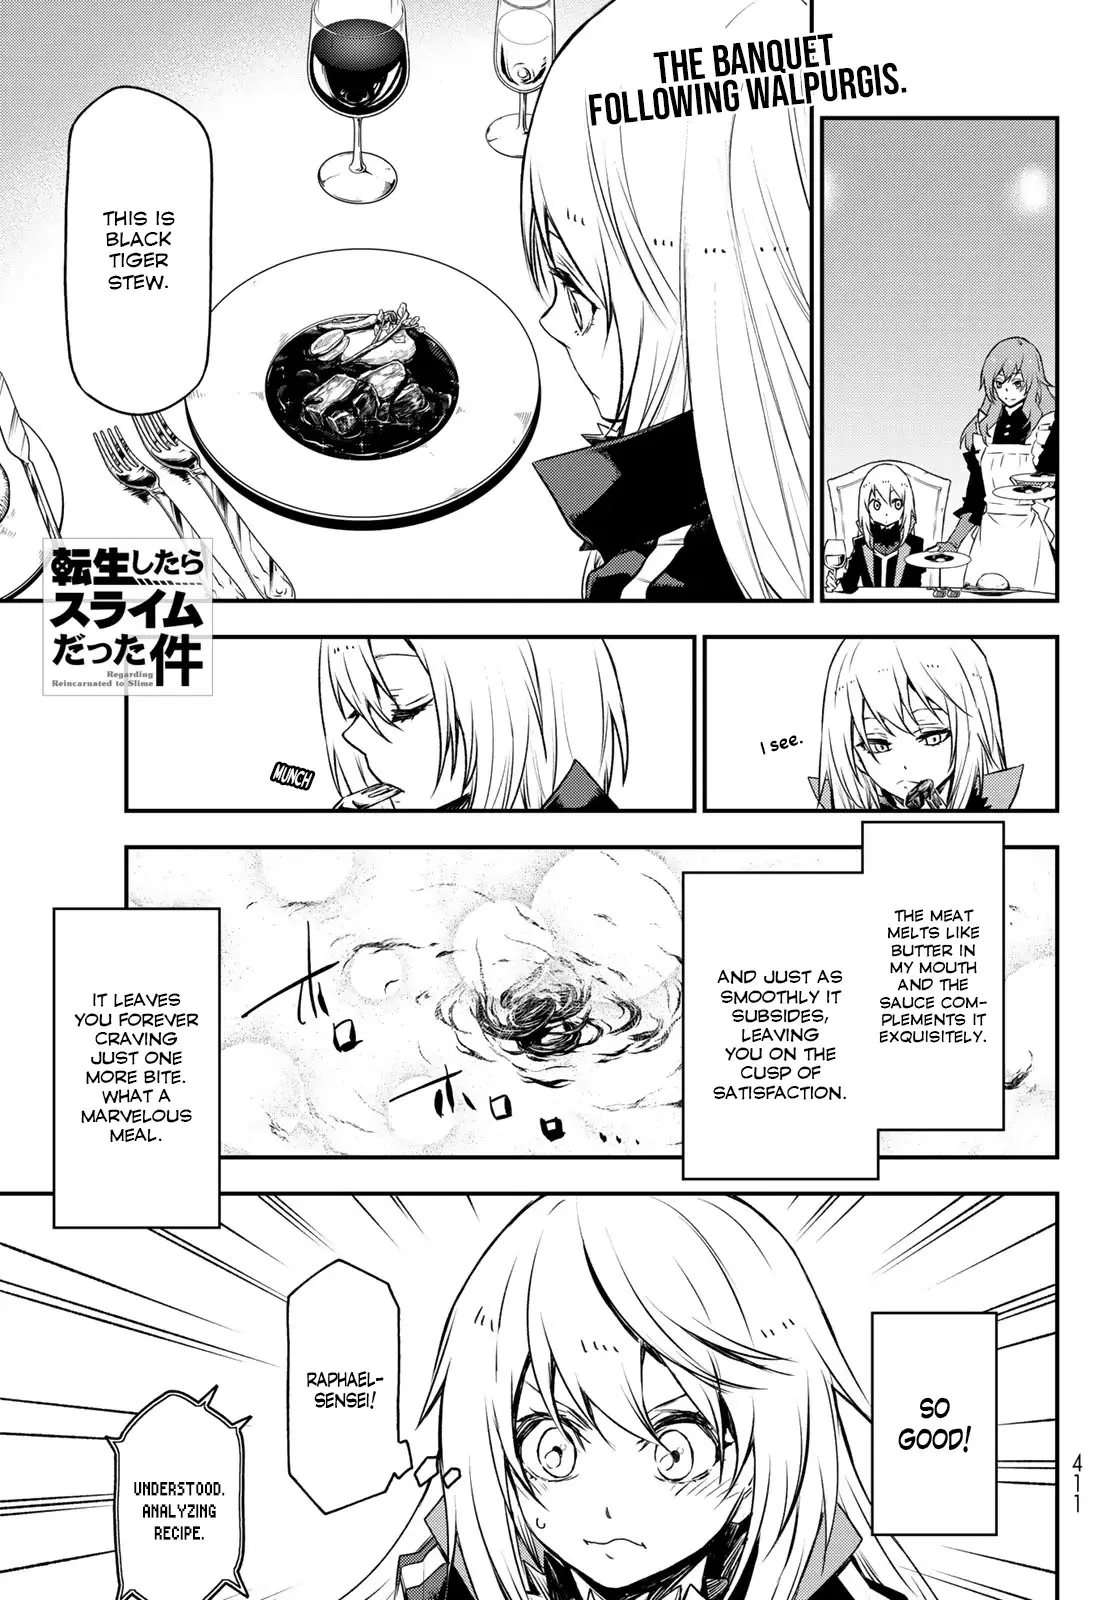 Tensei Shitara Slime Datta Ken - 87 page 1